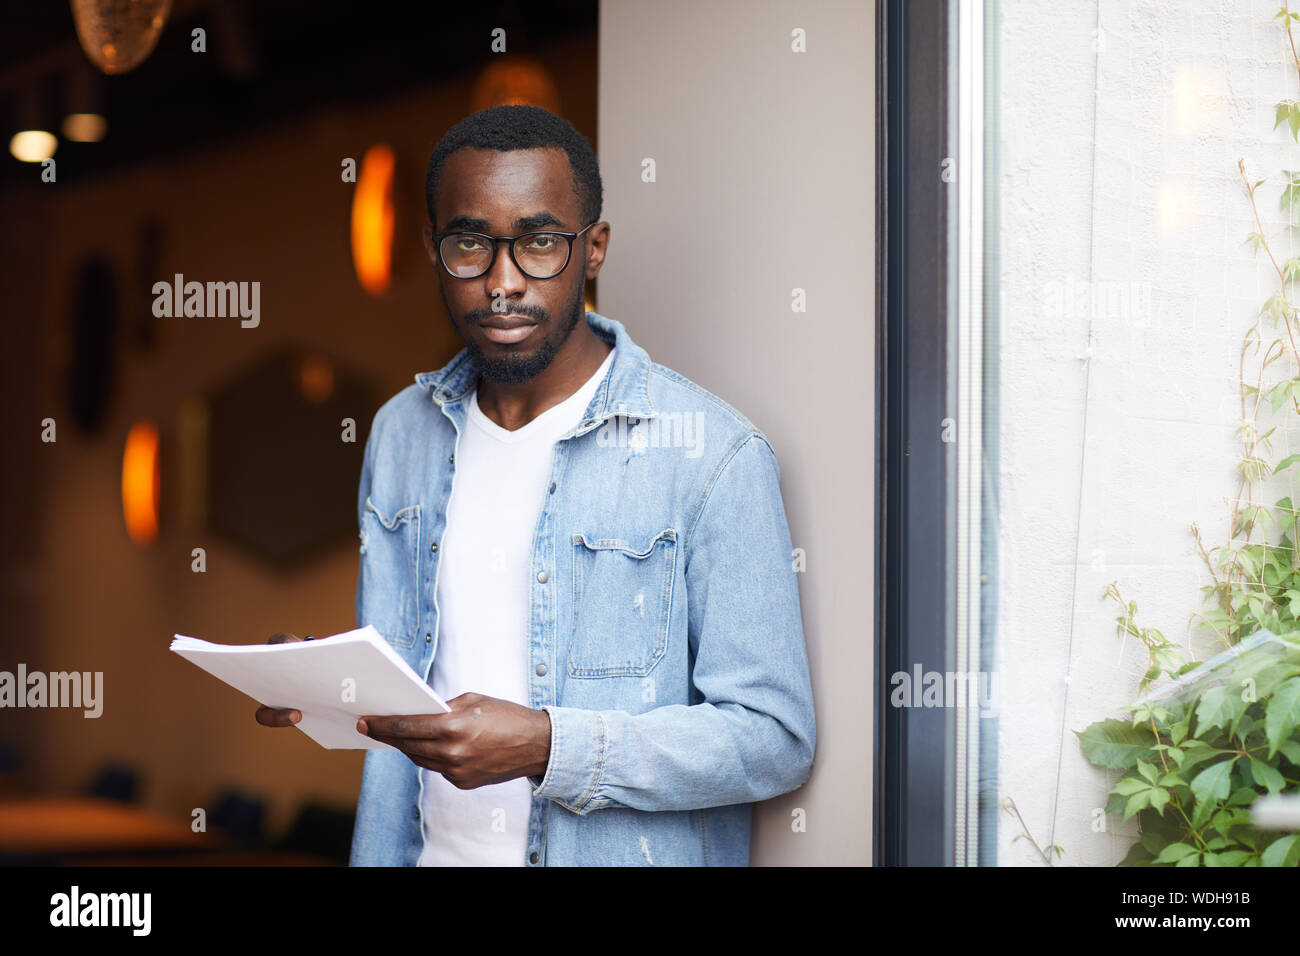 Portrait der Afrikanischen jungen Mann in Brillen und legere Kleidung, Dokumente und Kamera Stockfoto